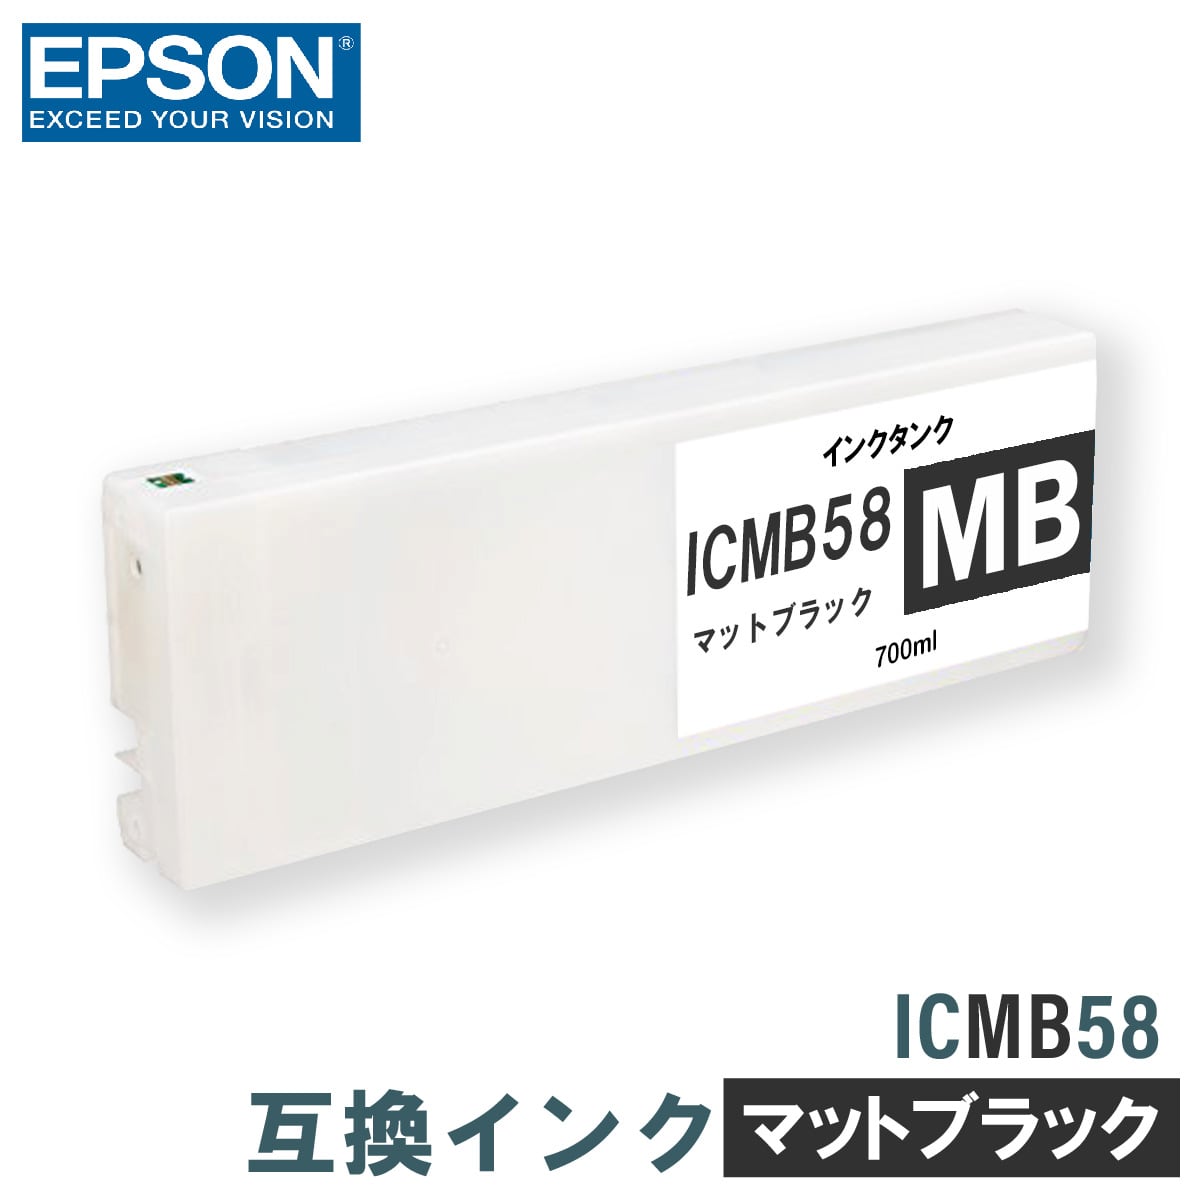 エプソン 互換インク EPSON ICMB58 マットブラック 700ml 互換インク、ロール紙販売のPRINKS(プリンクス)